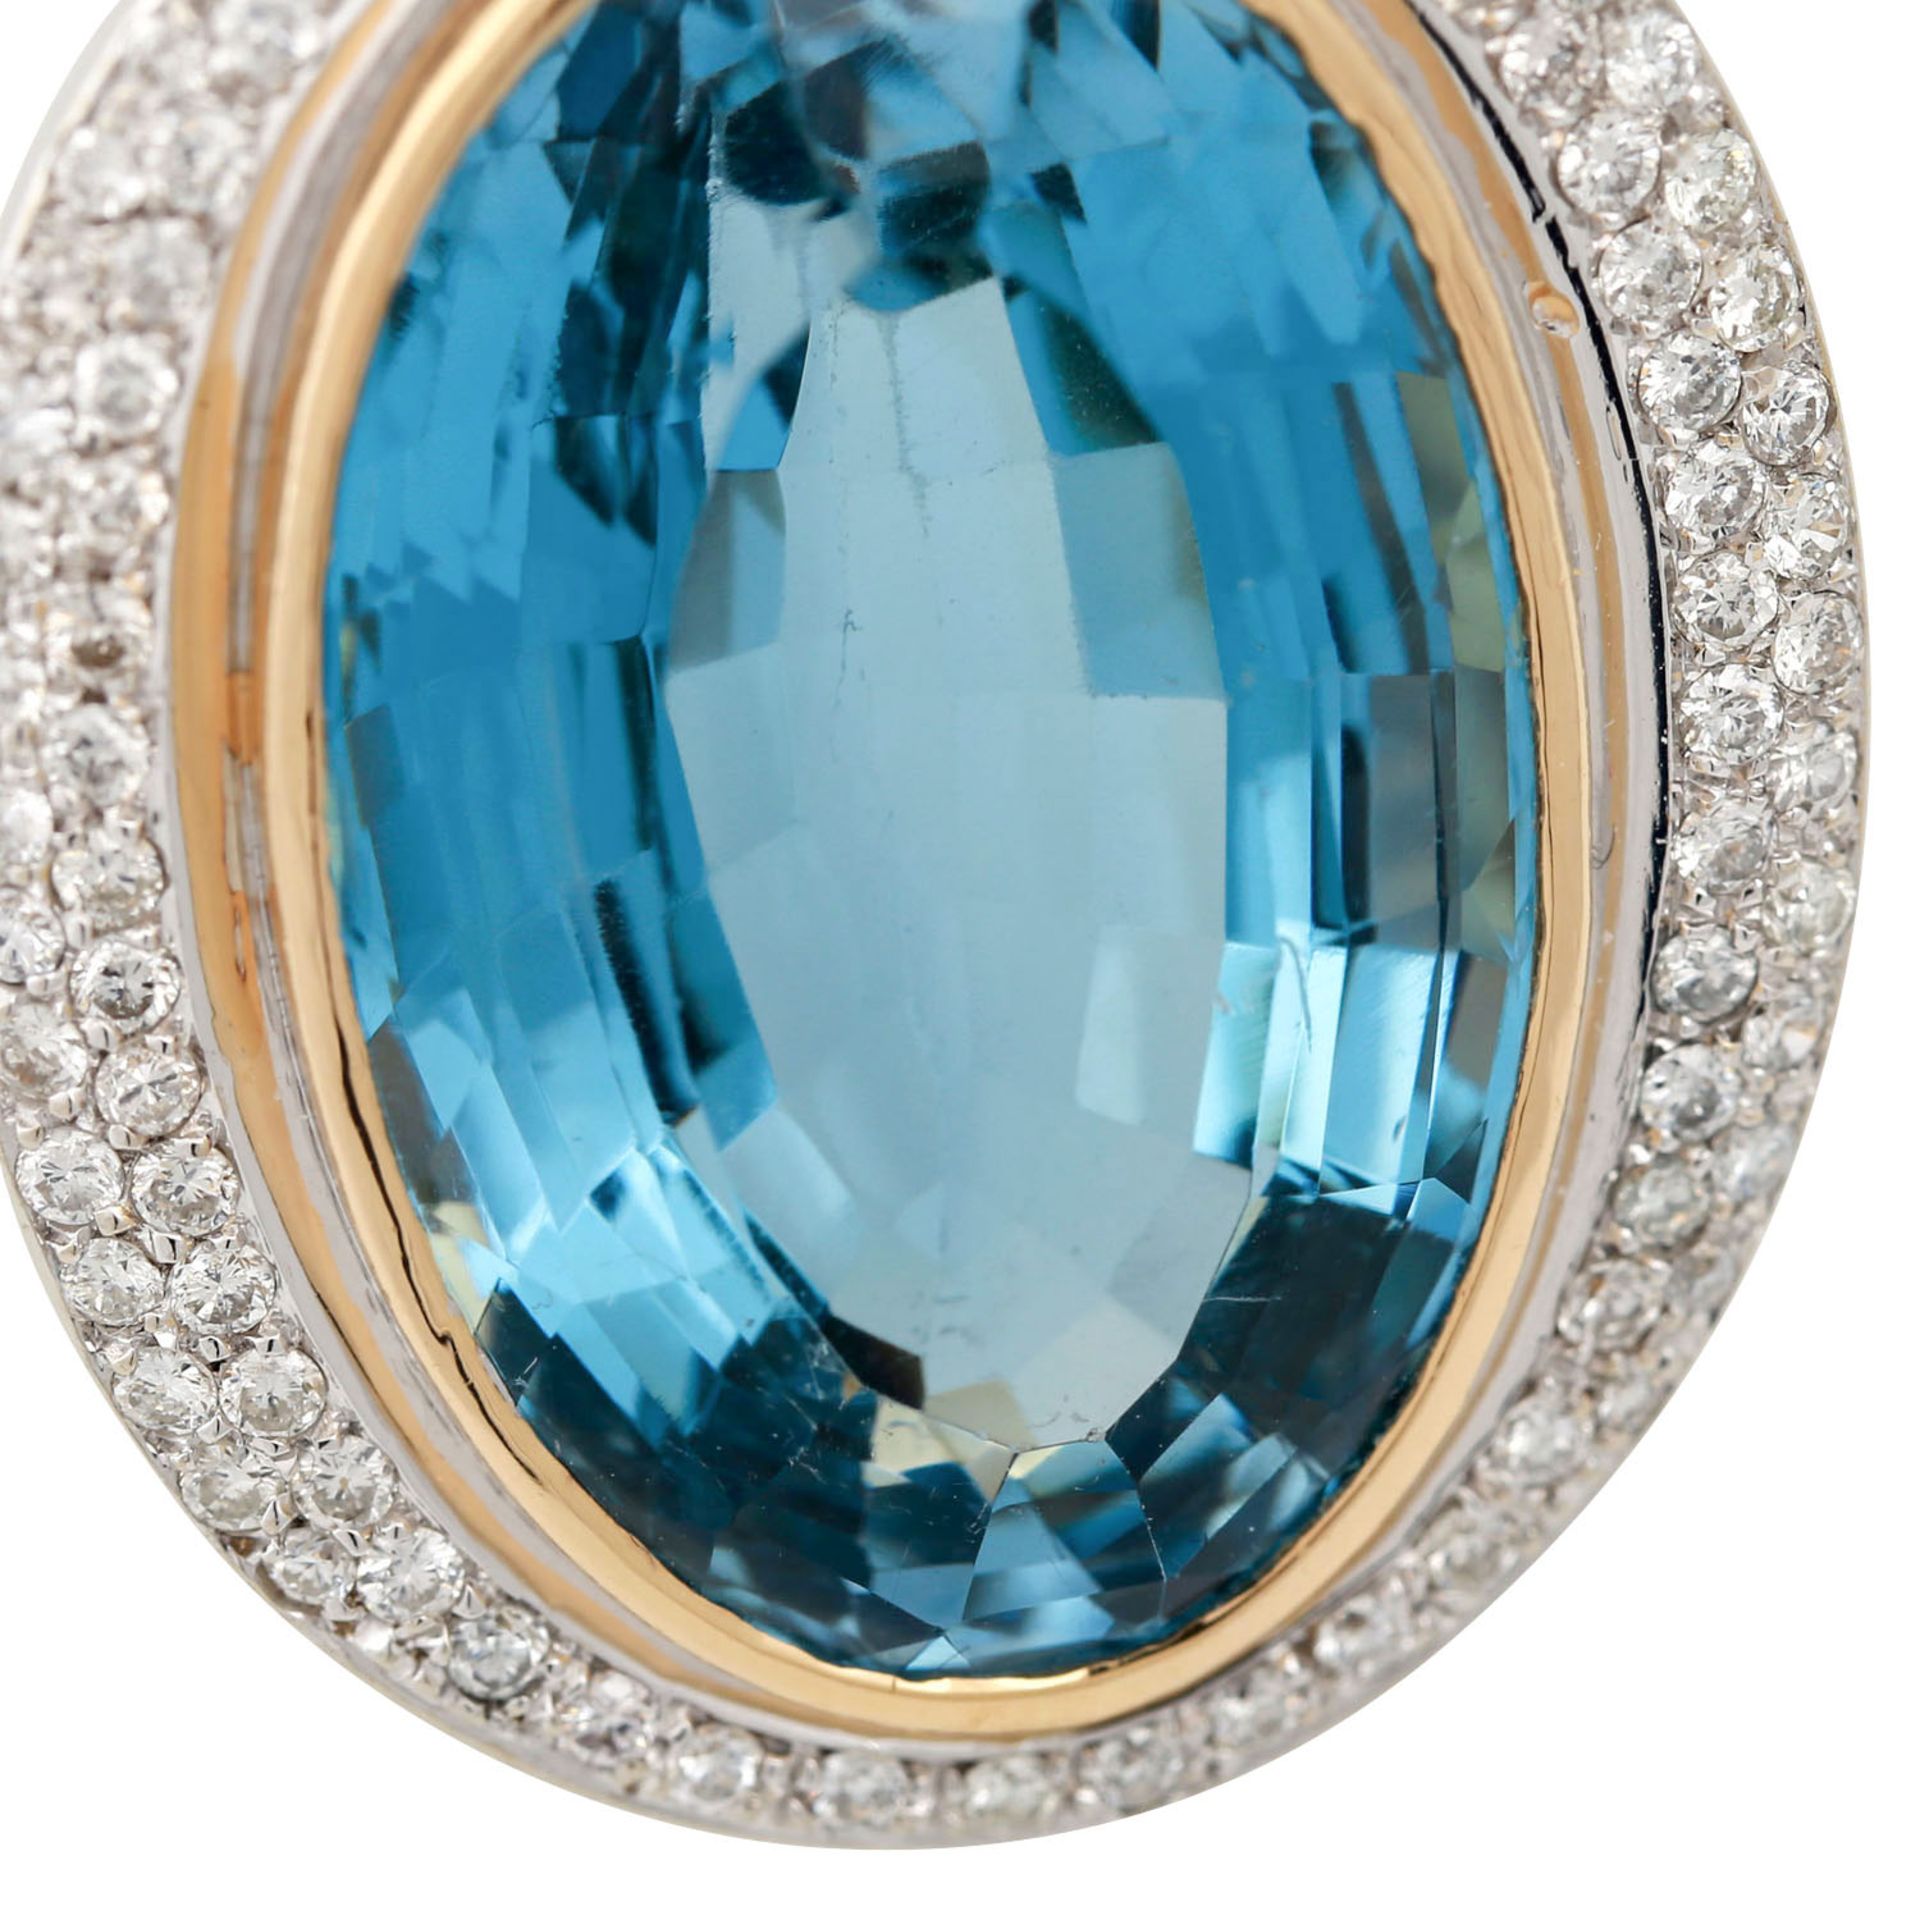 Massiver Ring mit Blautopas ca. 30 ct und Brillanten zus. ca. 0,75 ct, mittlere Farbe - Image 5 of 5